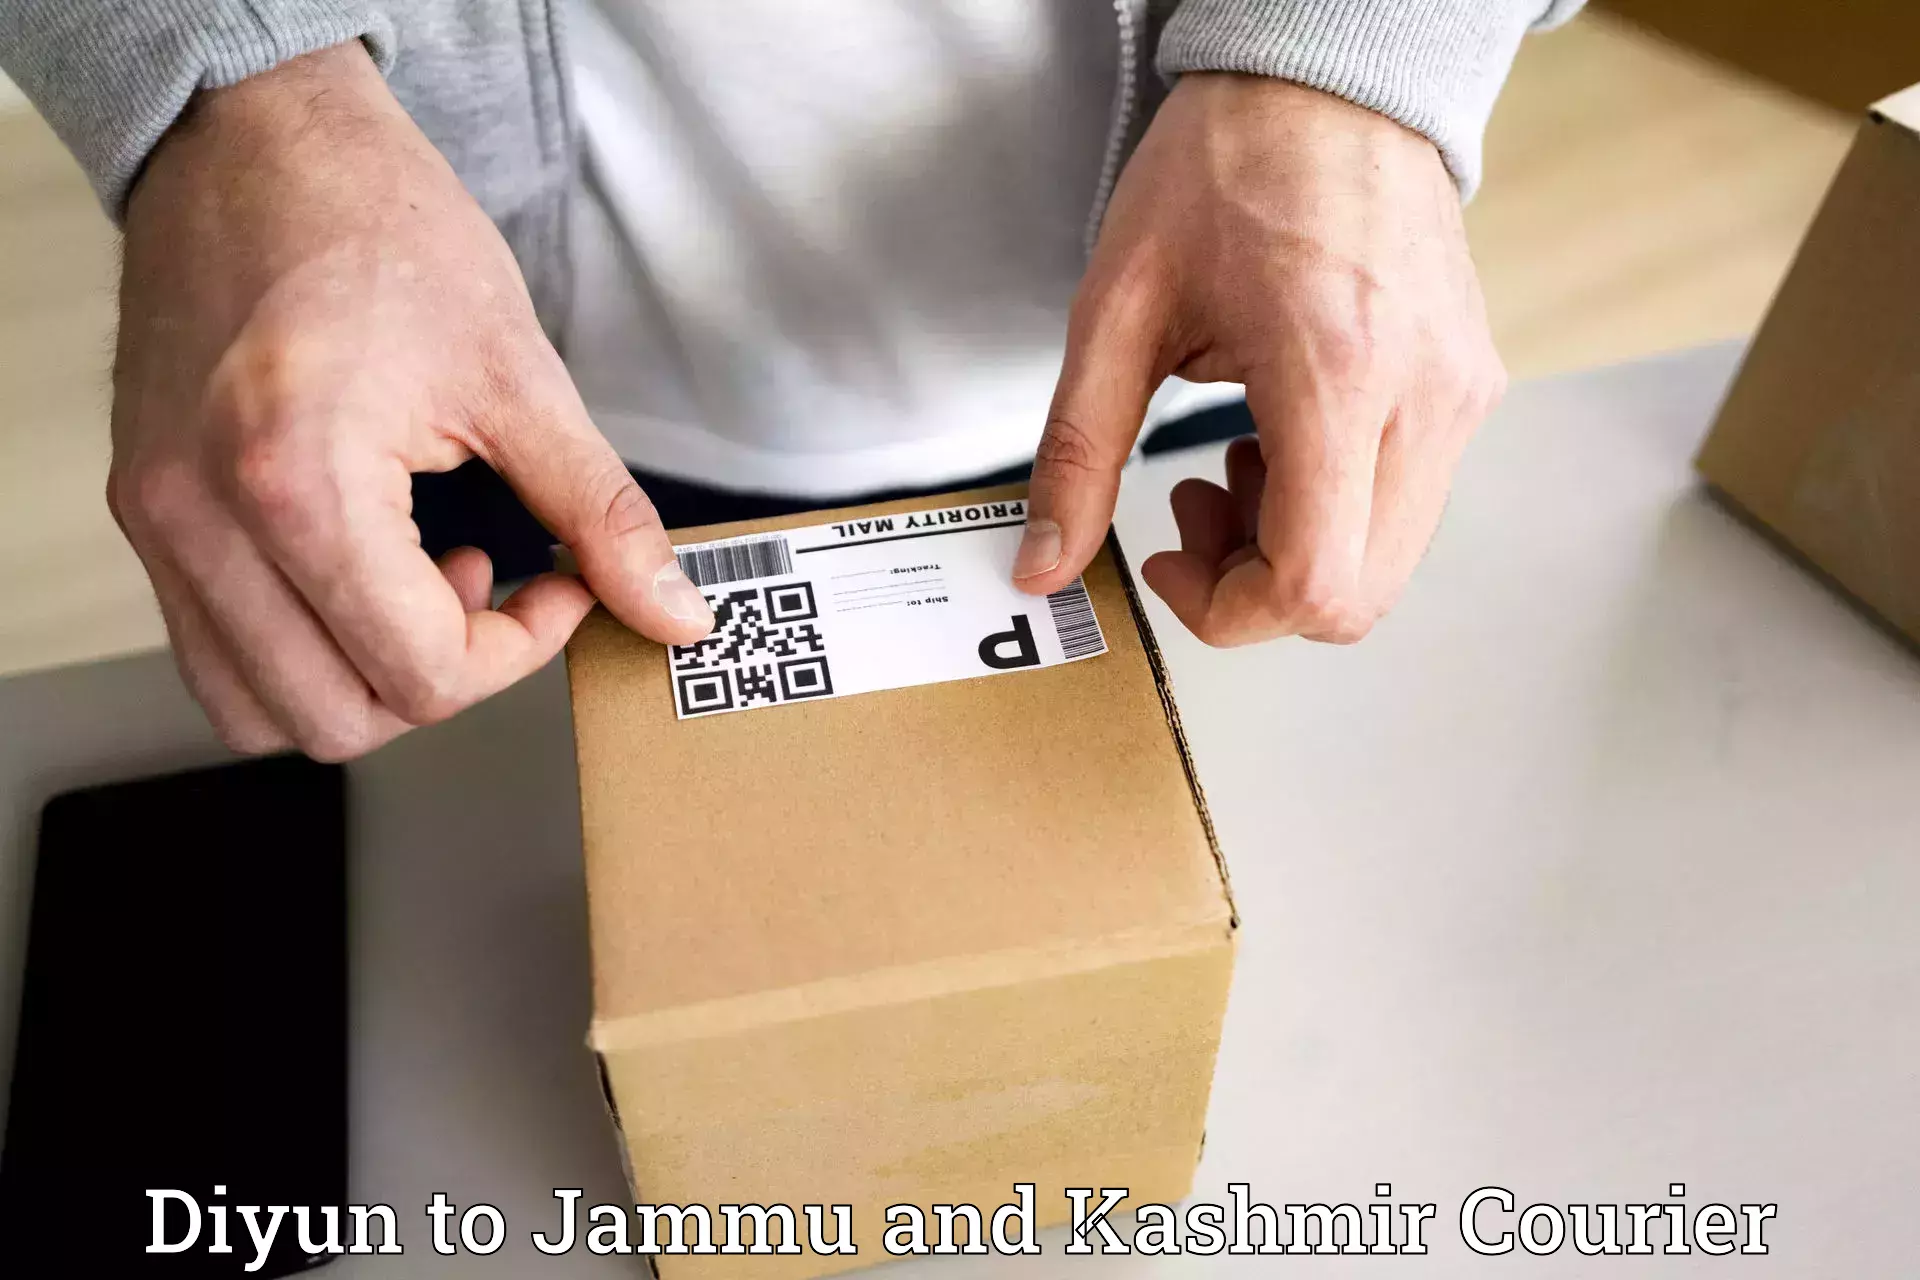 Express mail solutions Diyun to University of Jammu